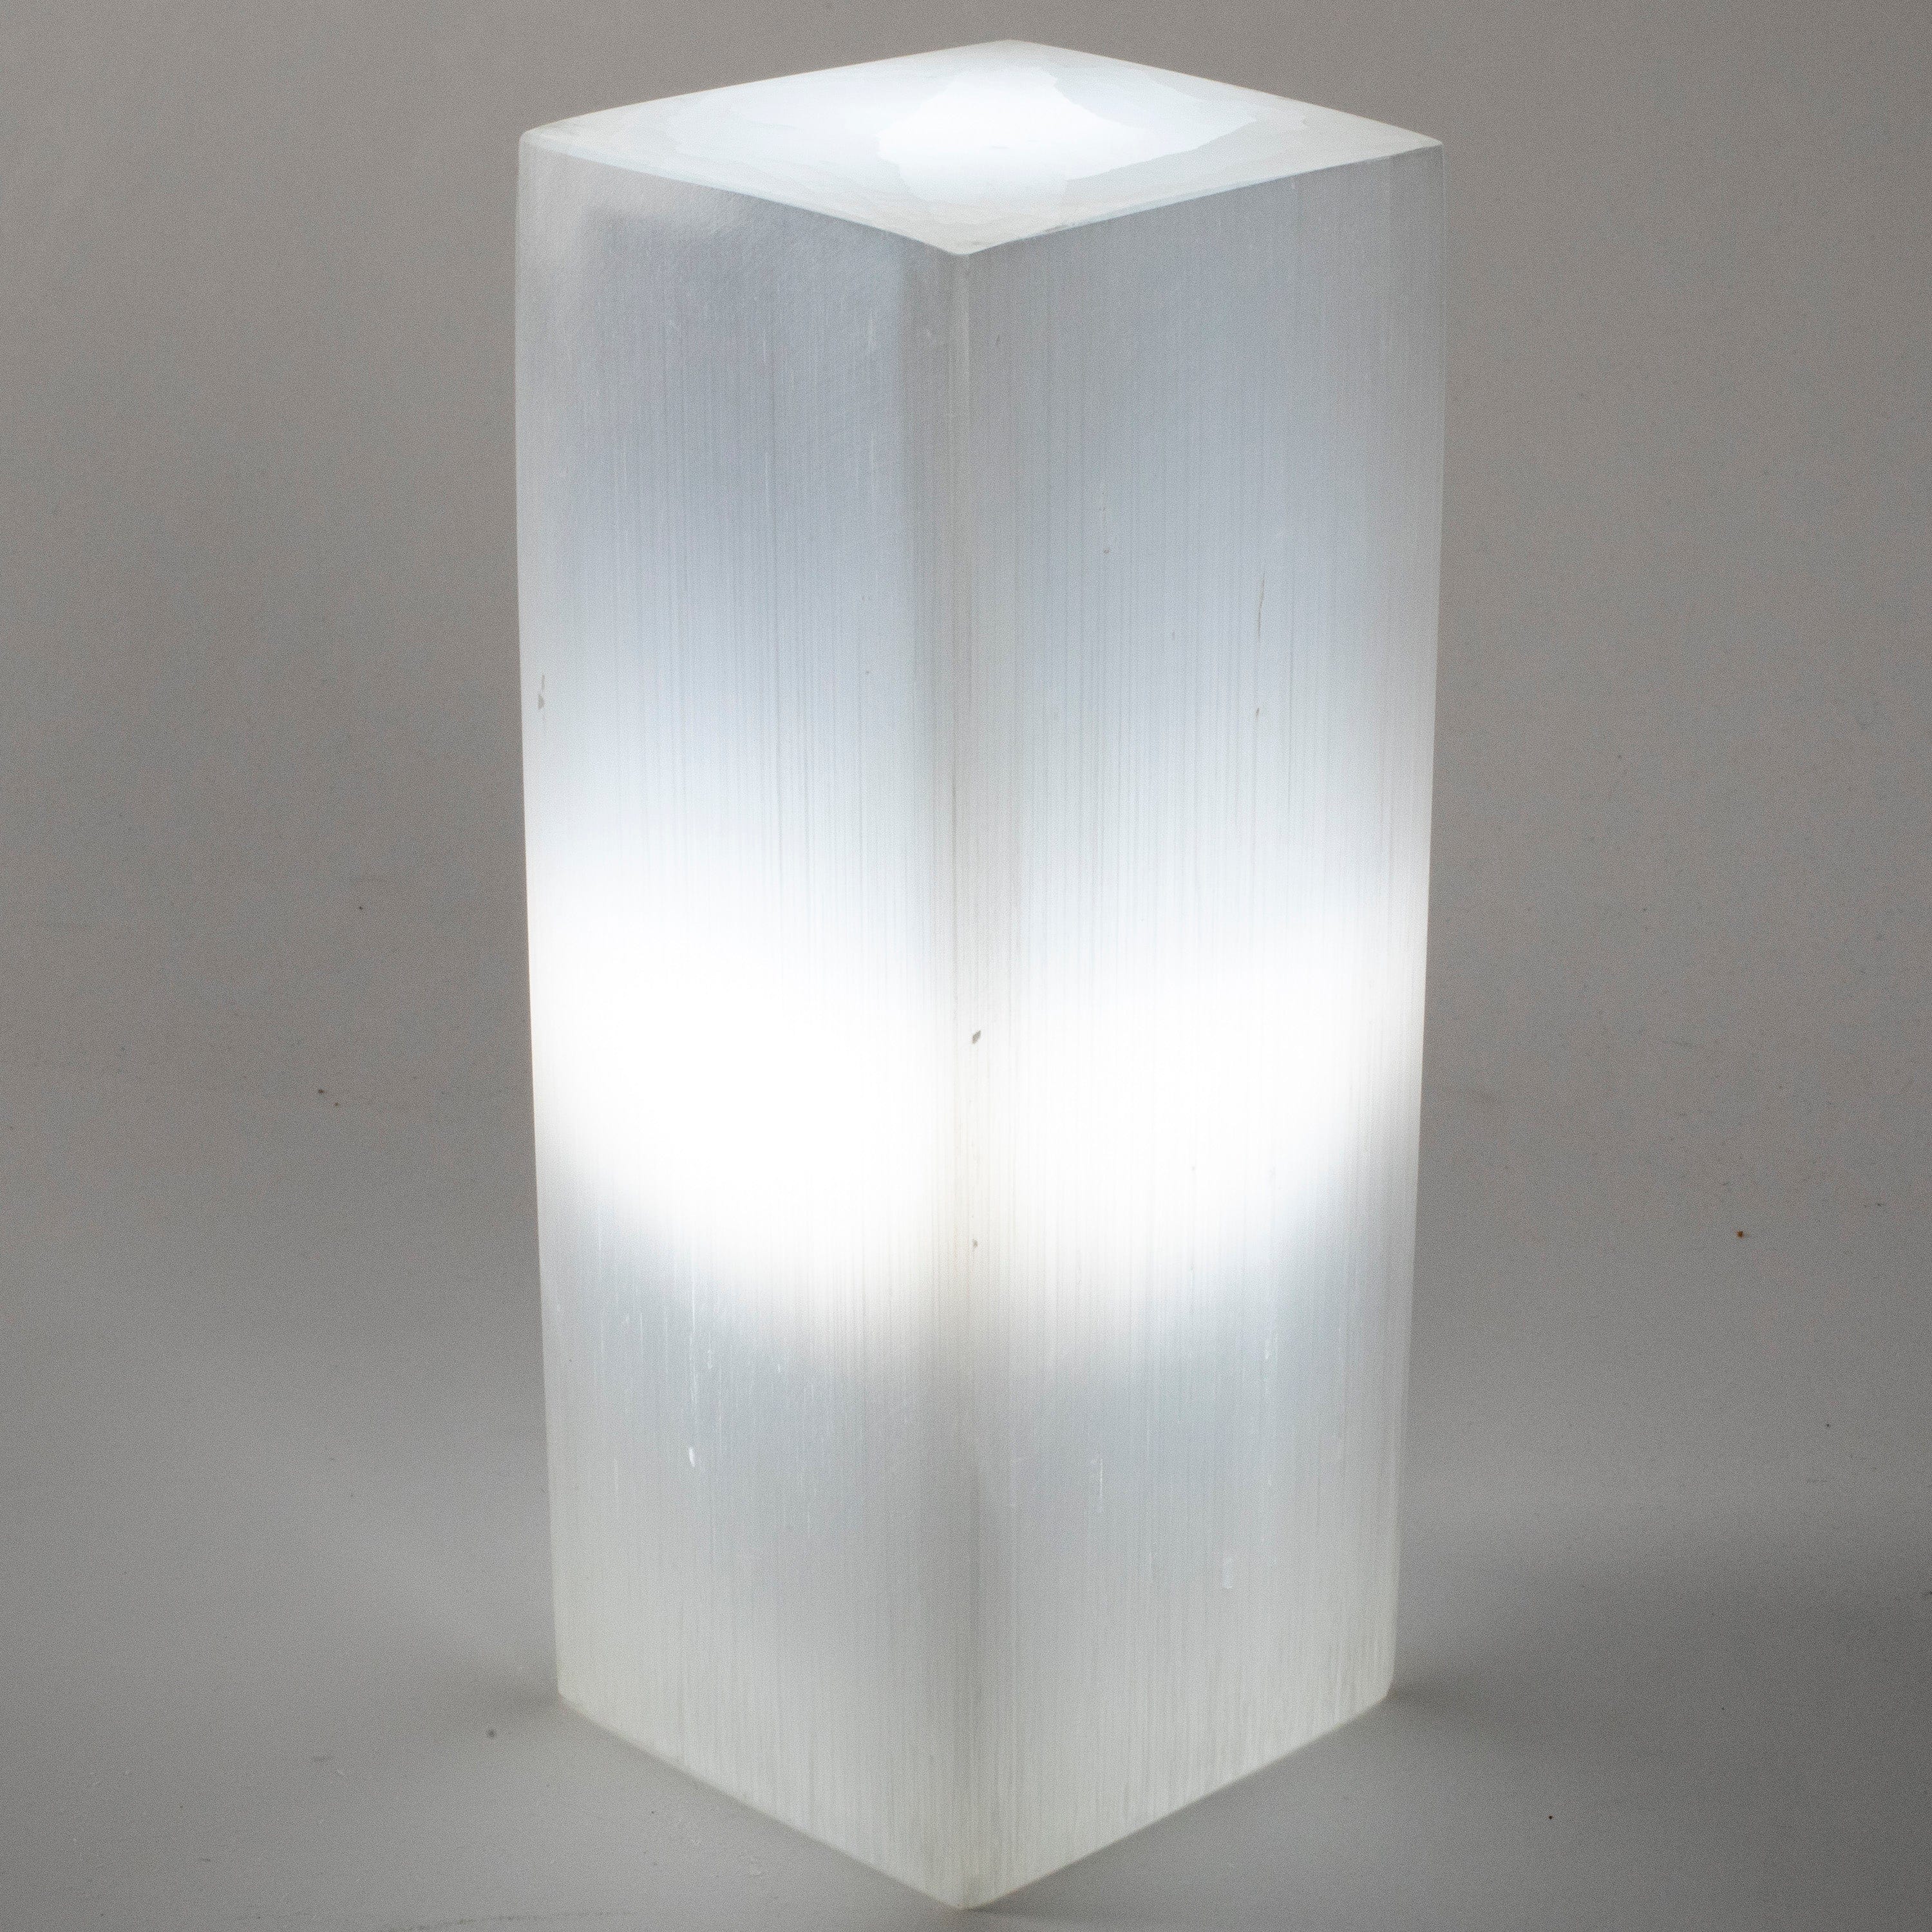 Kalifano Selenite Square Selenite Lamp from Morocco - 8" SL300-20